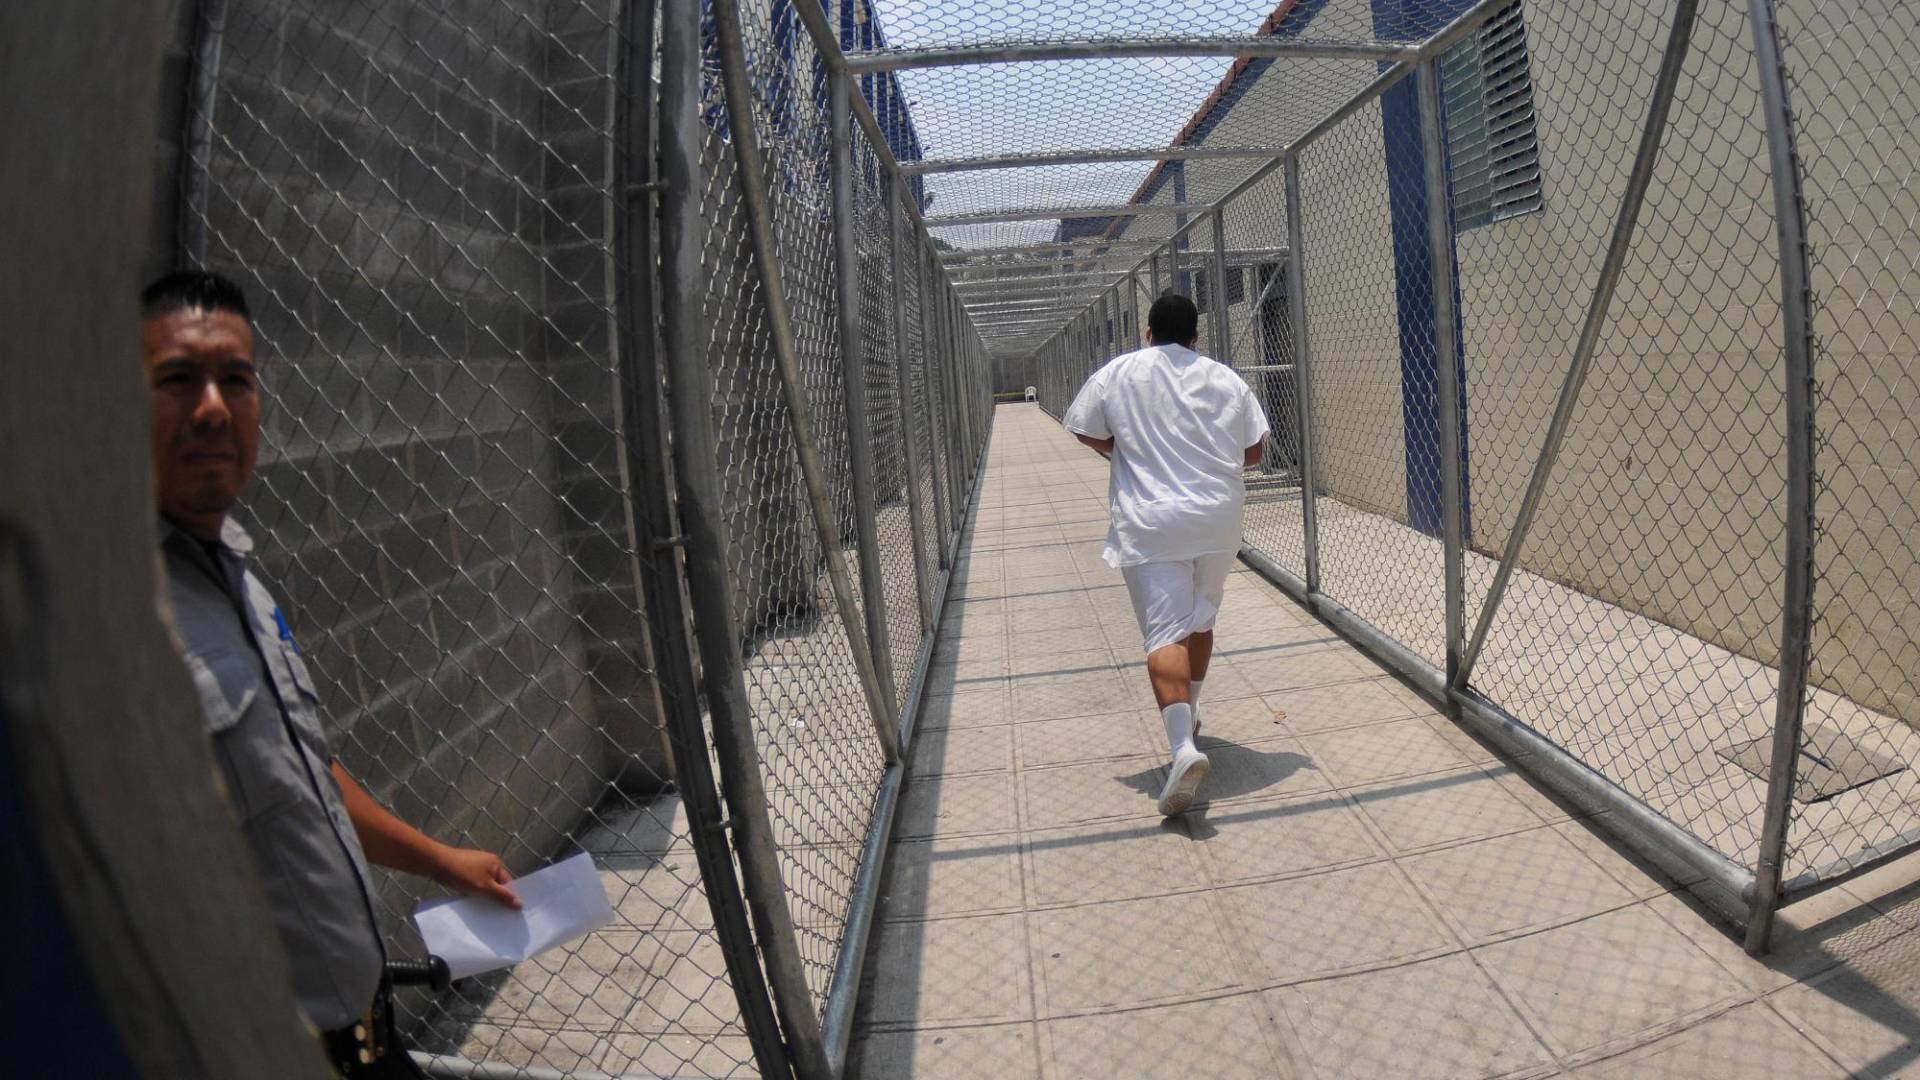 $!Un privado de libertad corre por uno de los pasillos de la cárcel luego de recibir una orden de un guardia de seguridad.